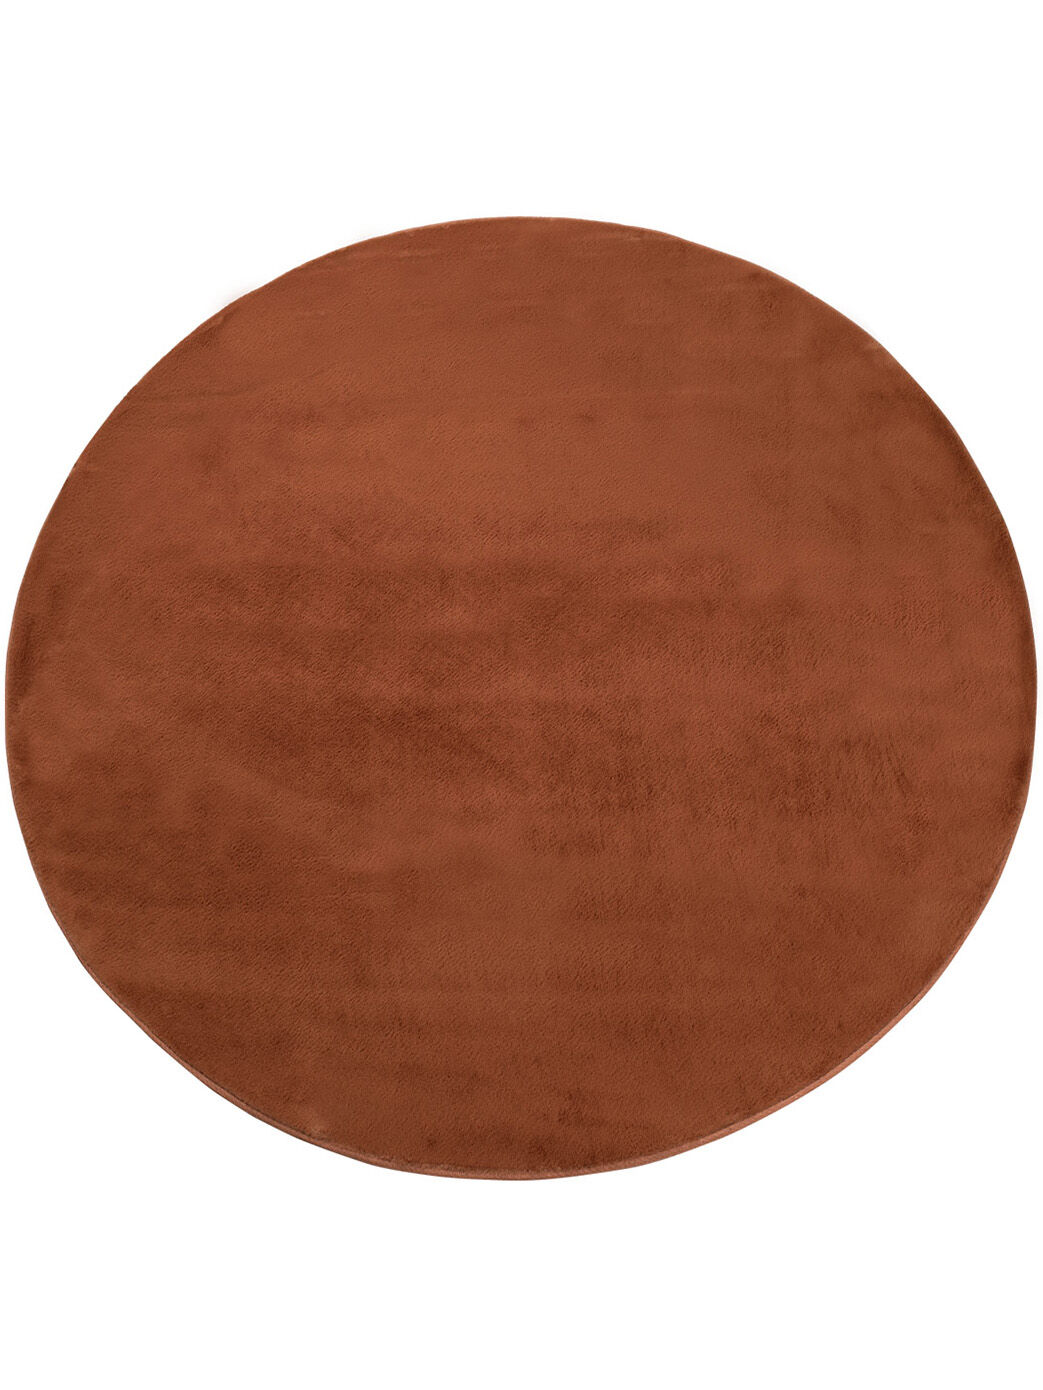 Flauschiger Teppich Mona Terra 160x160 1